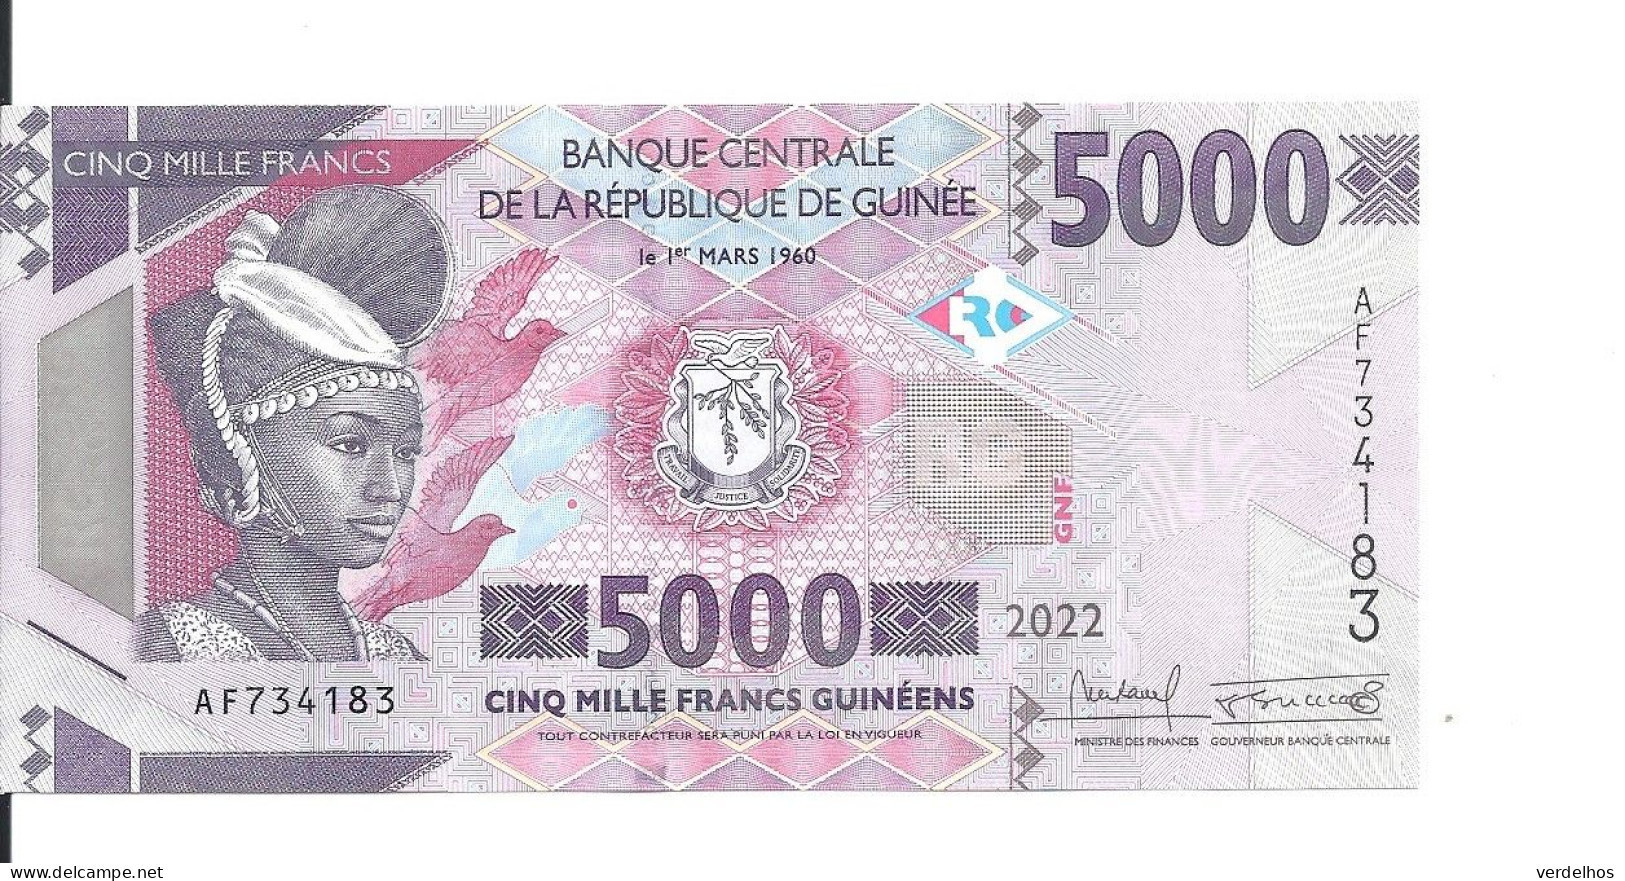 GUINEE 5000 FRANCS 2022 UNC P 49 D - Guinea